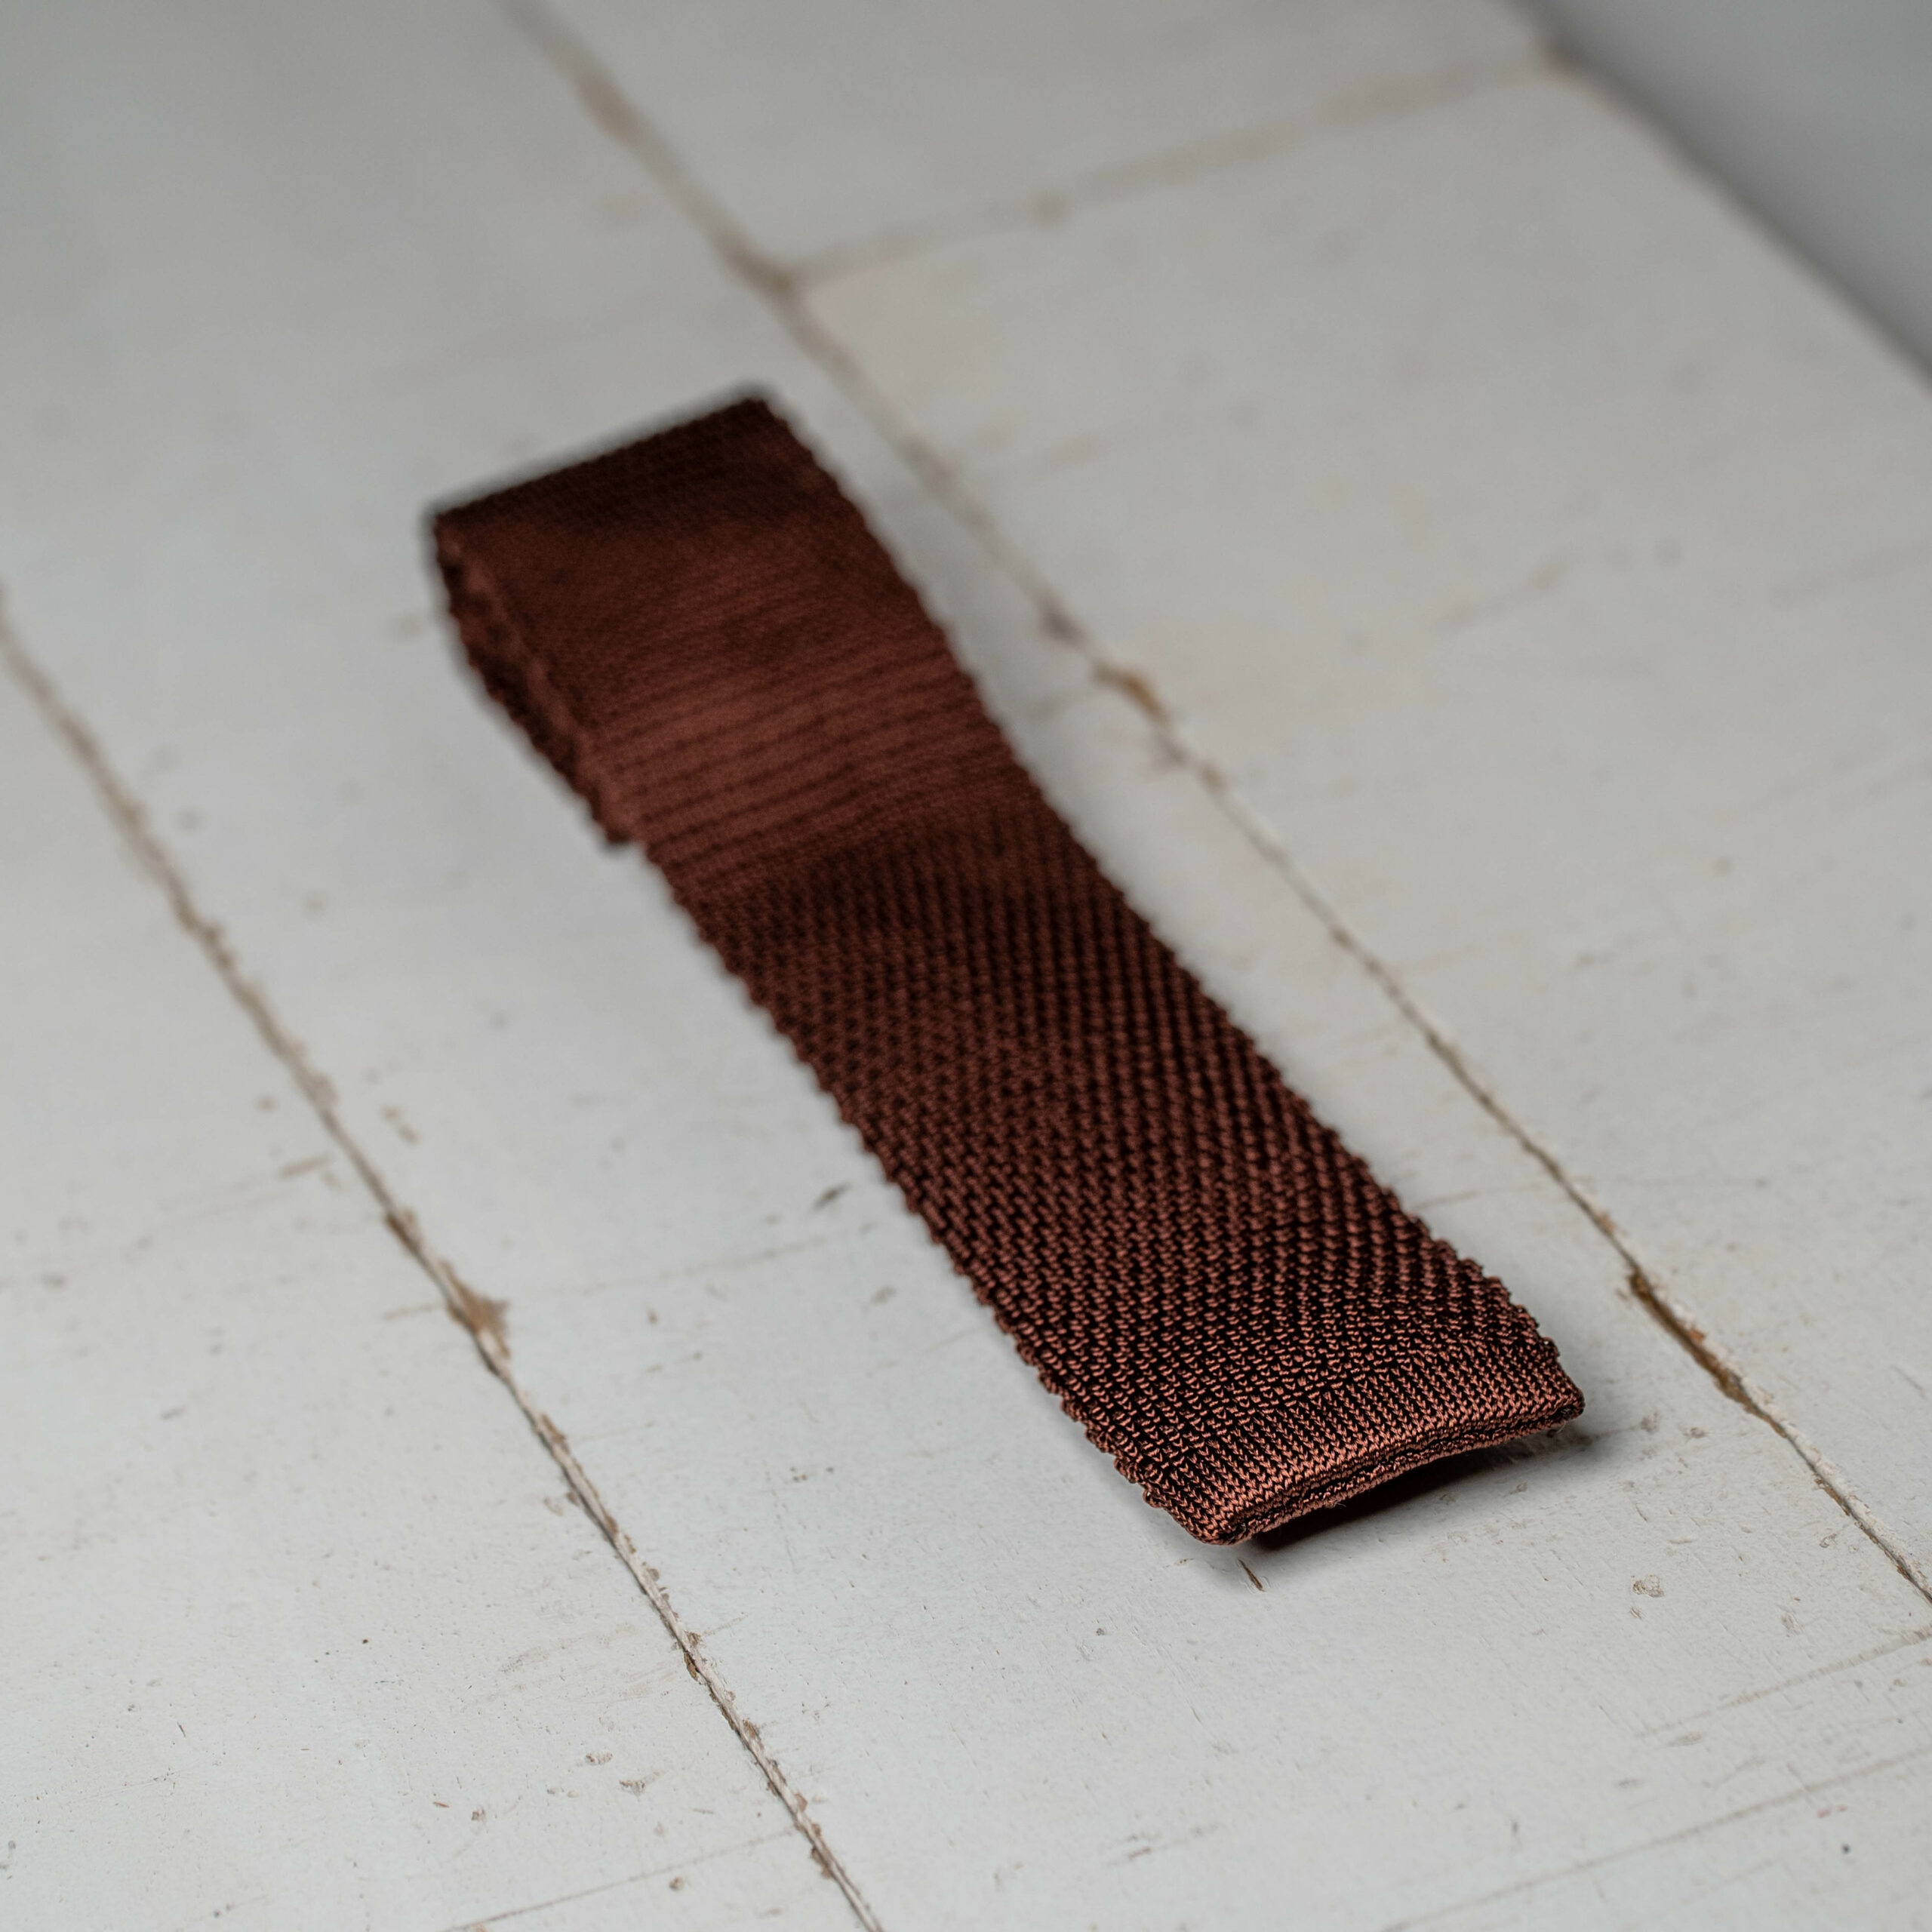 Cravate trico marron-7403166